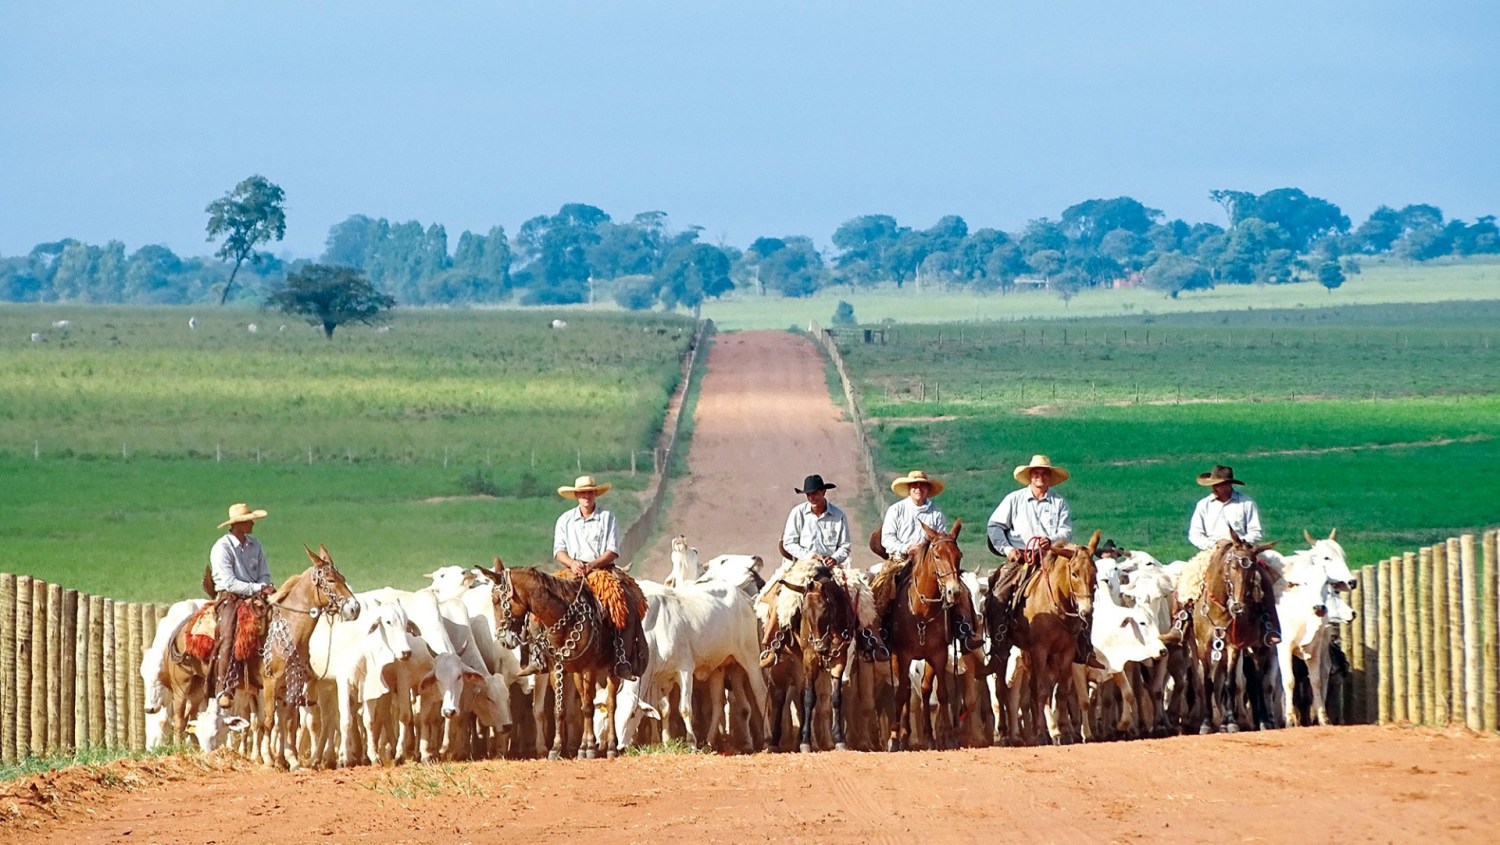 JBJ Agropecuária - comitiva estrada boiadeira - gado nelore - vaqueiros com mulas - fotao